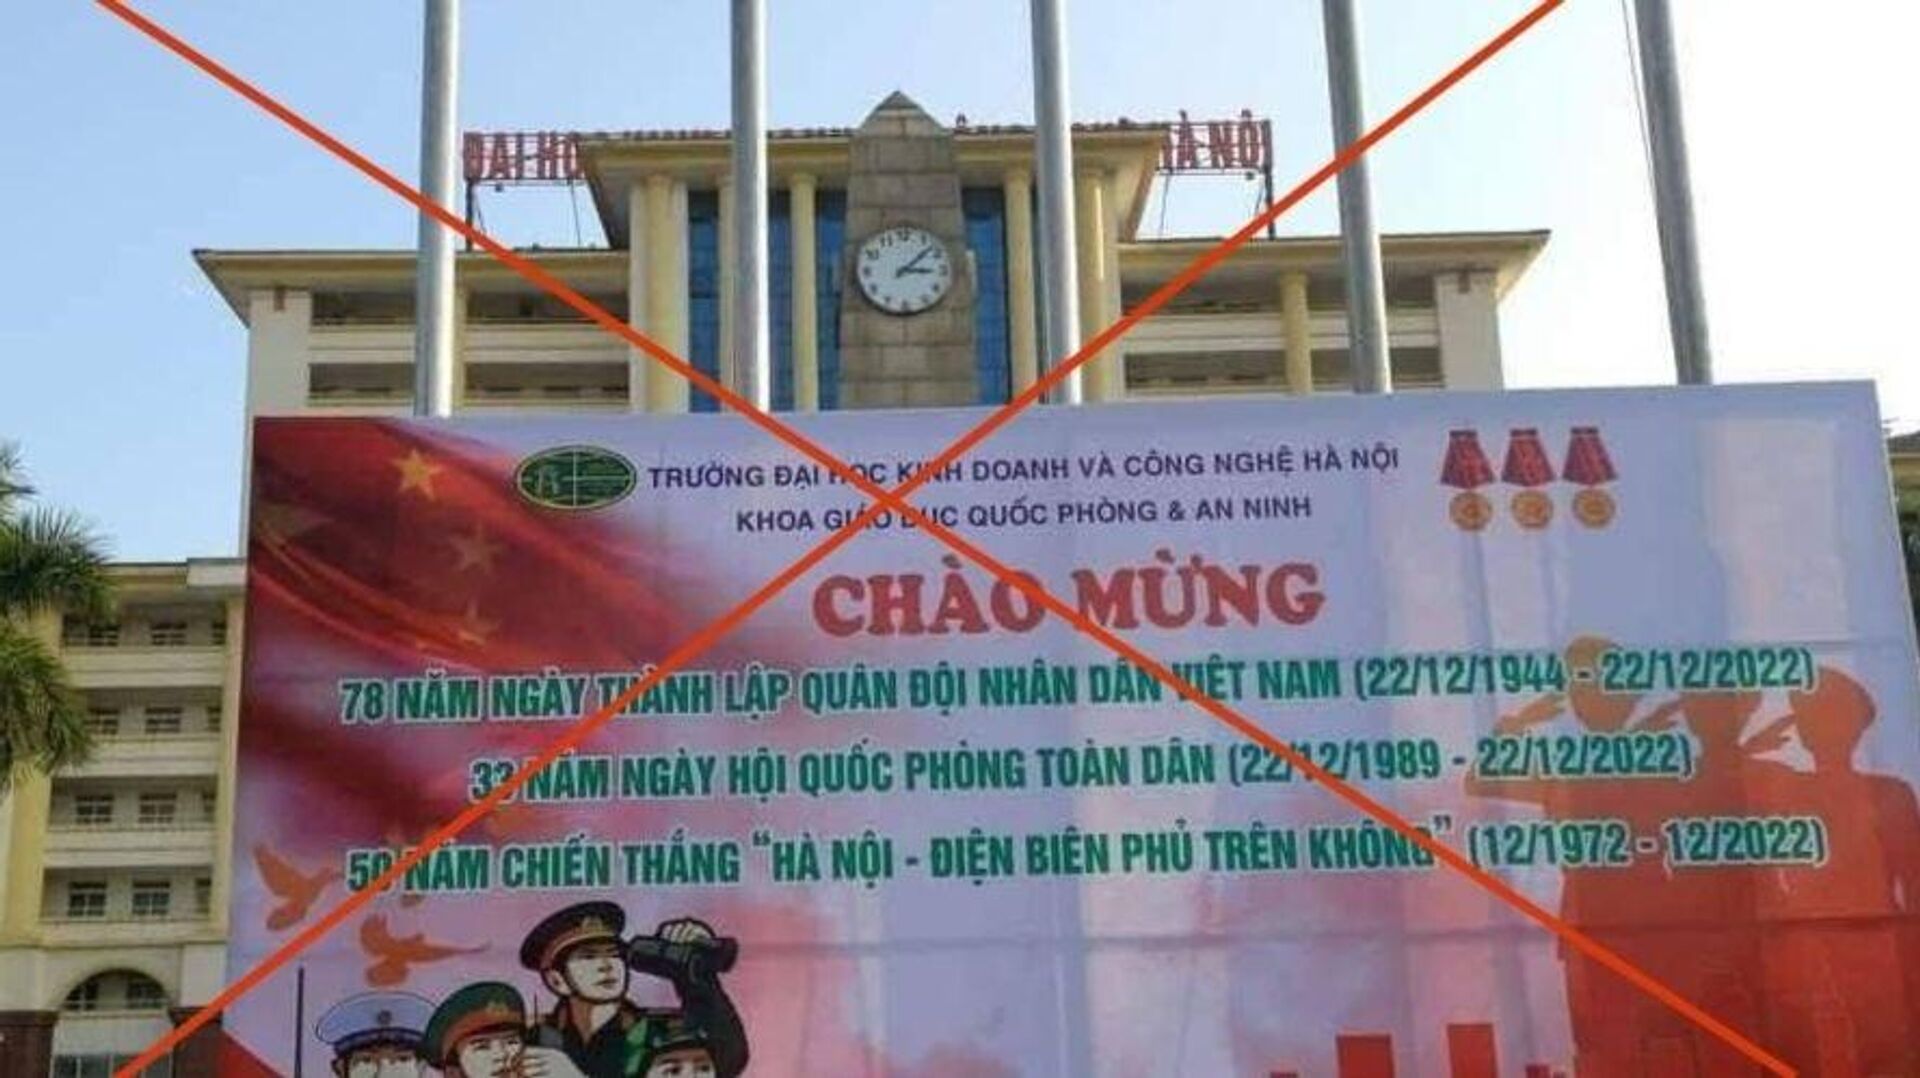 Pano tuyên truyền của Trường Đại học Kinh doanh Công nghệ Hà Nội in cờ Trung Quốc.  - Sputnik Việt Nam, 1920, 20.01.2023